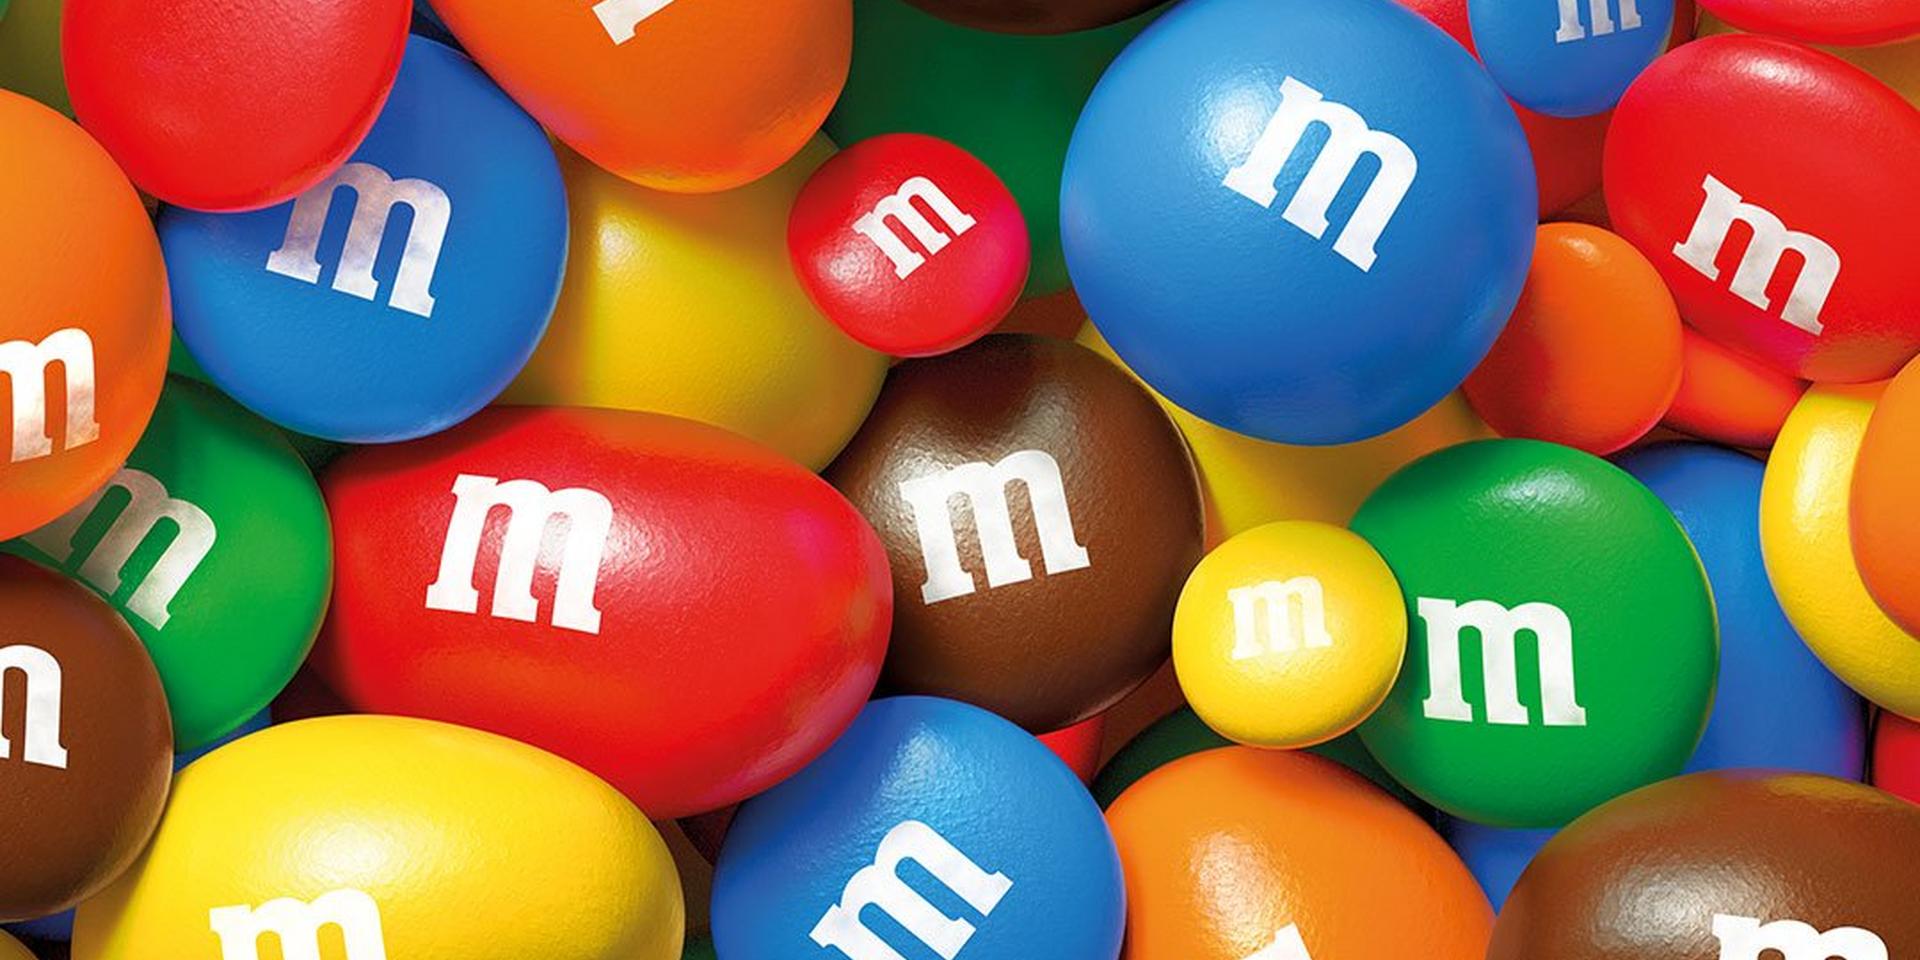 Mini M&M'S 3lb Bulk Candy | M&M’S®